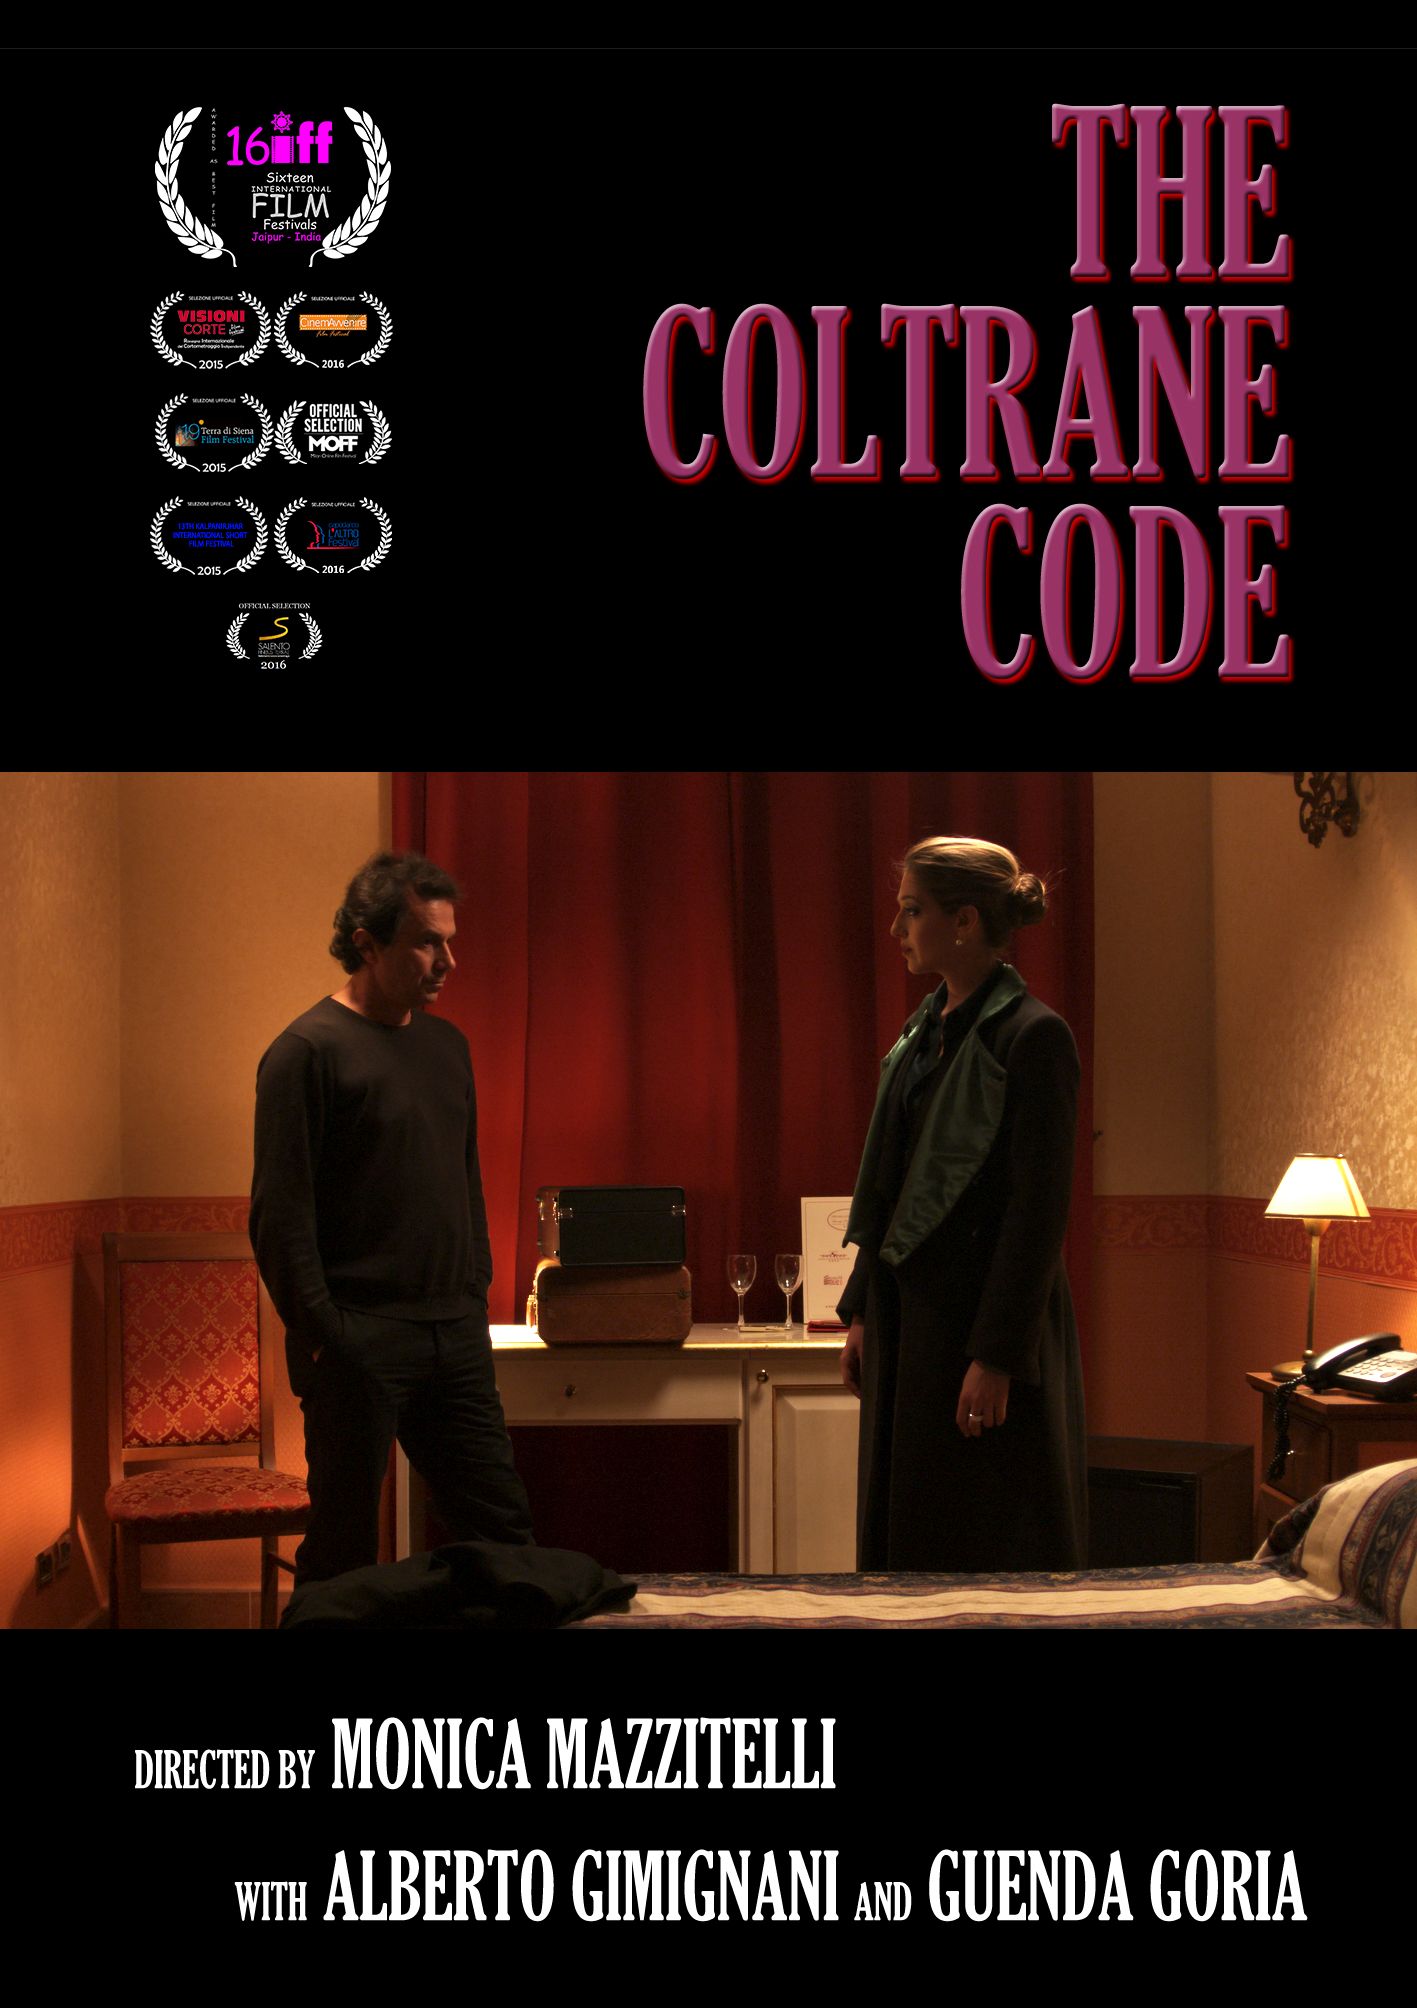 The Coltrane Code